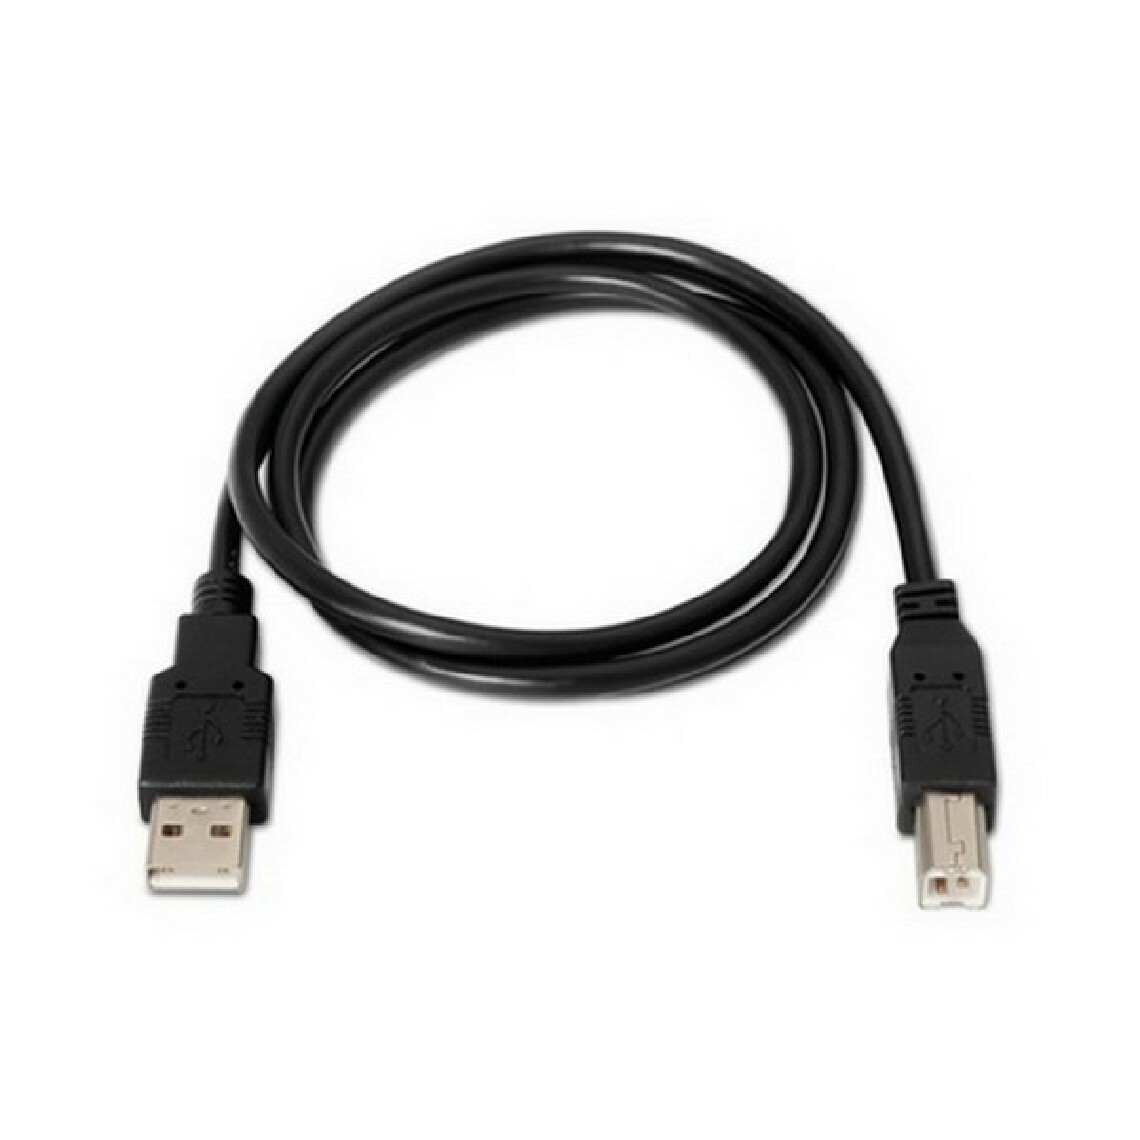 Nanocable - Câble USB 2.0 A vers USB B NANOCABLE 10.01.0105-BK Noir (4,5 m) - Câble antenne